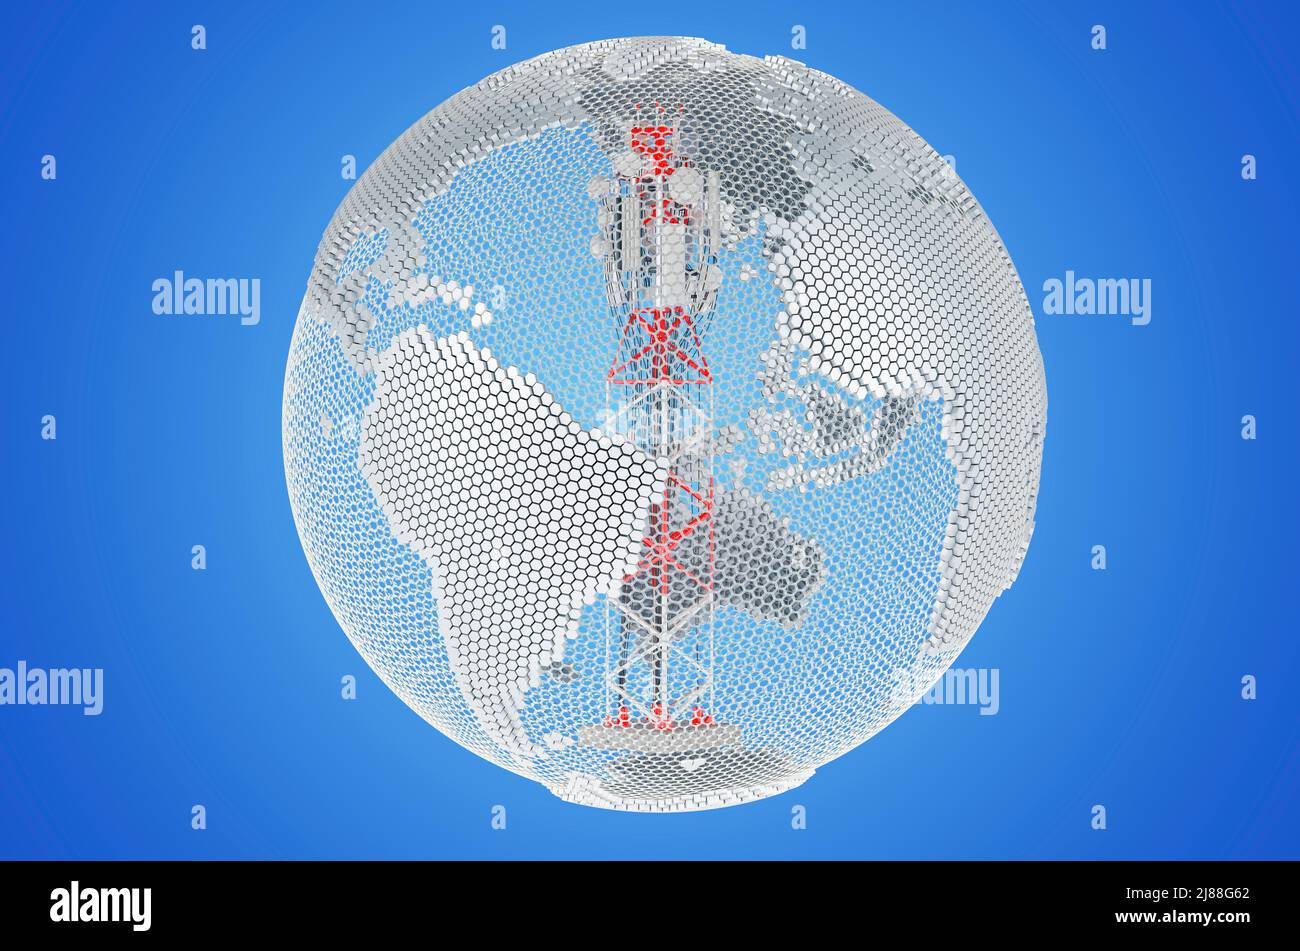 Torre mobile con antenne per telefono cellulare all'interno del globo terrestre trasparente, rendering 3D su sfondo blu Foto Stock